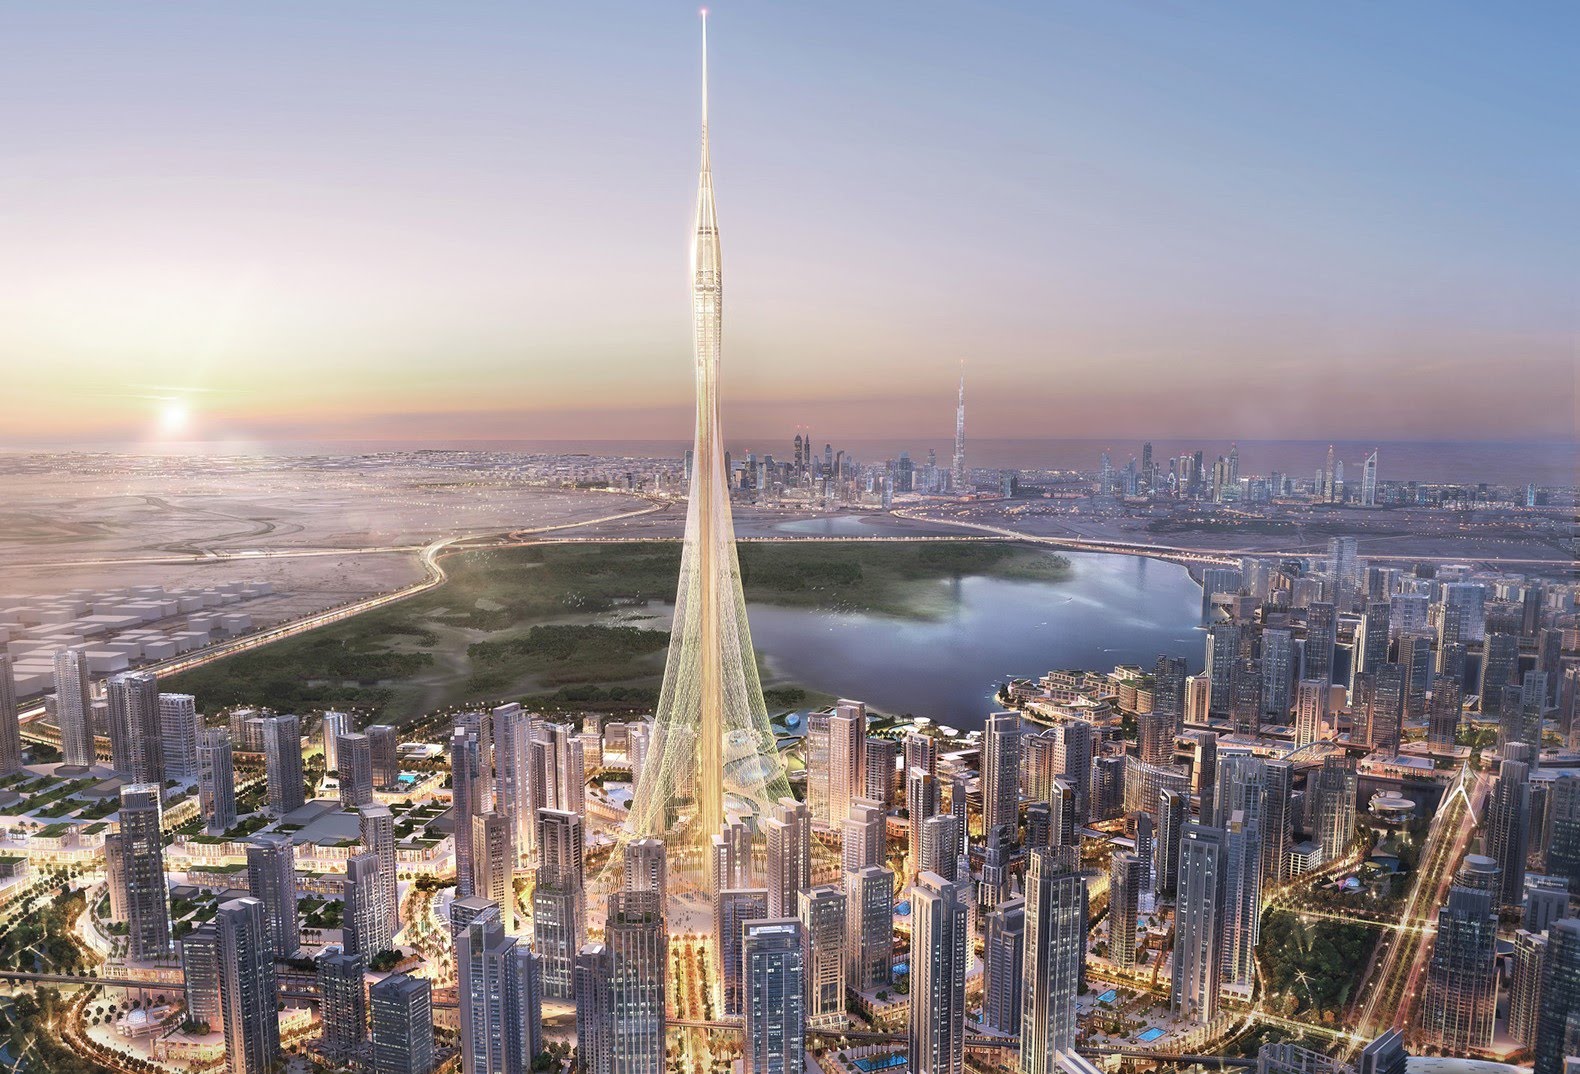 2020-ra készül el a világ legmagasabb felhőkarcolója